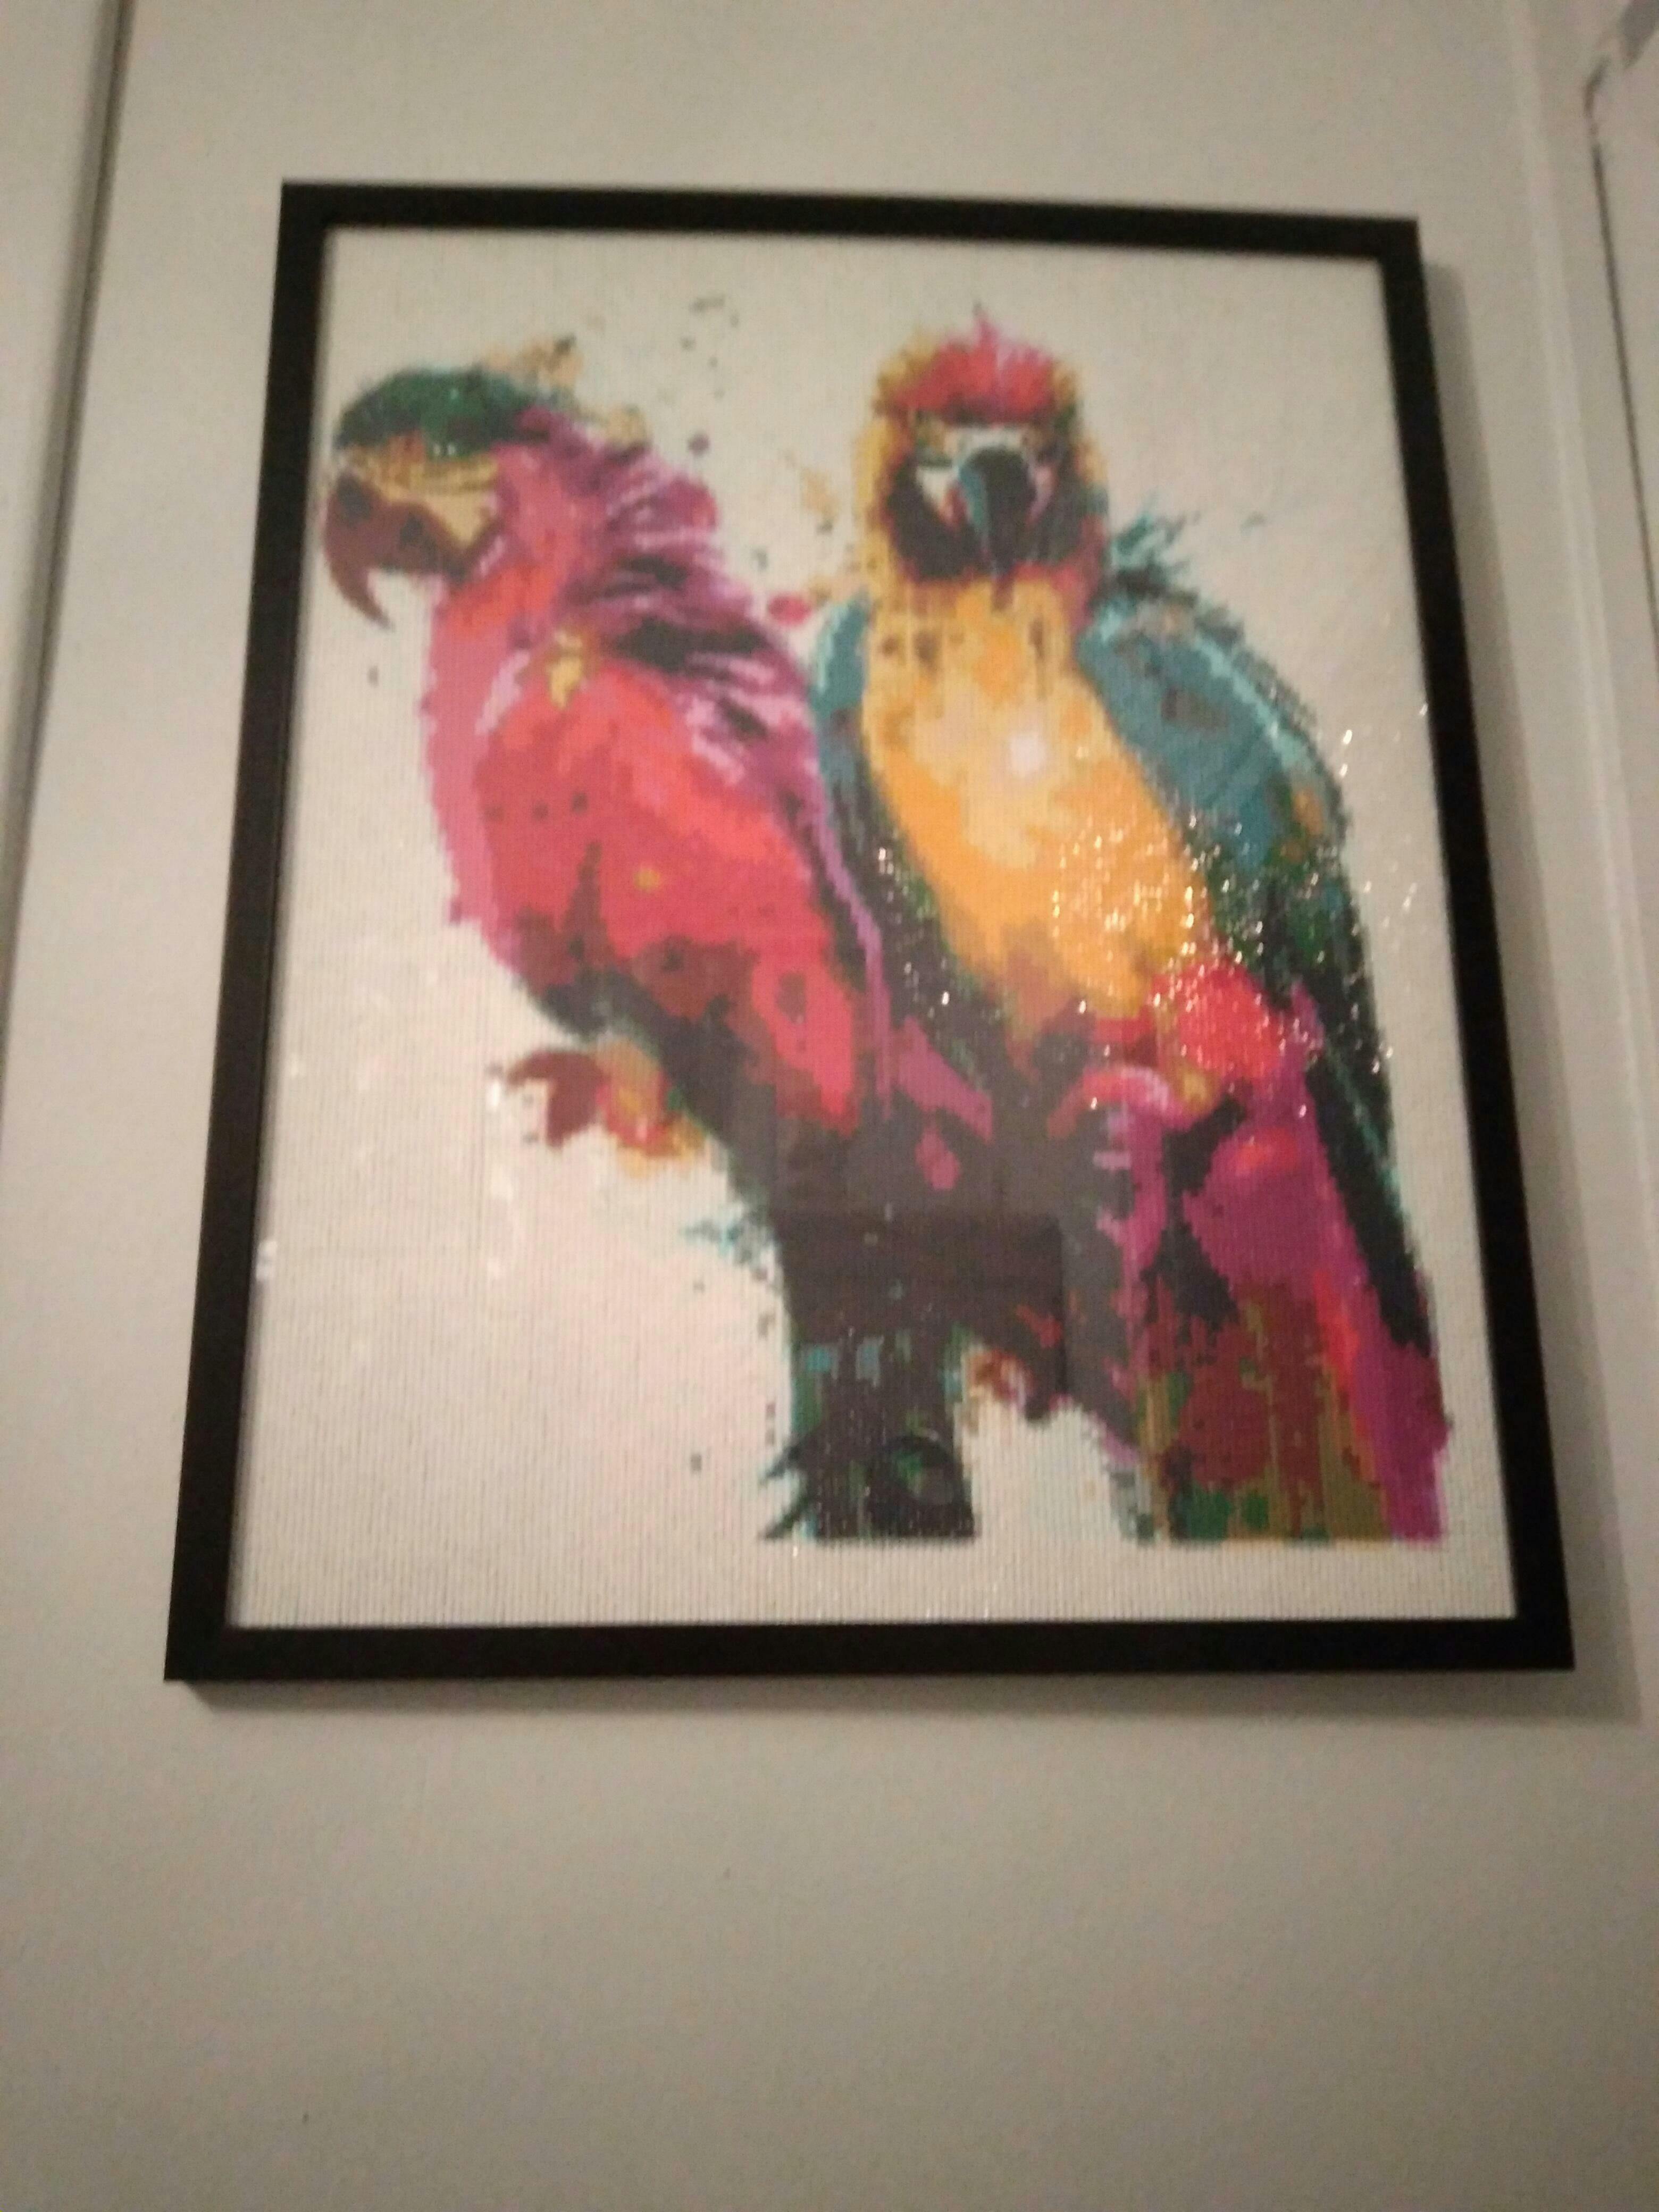 Diamond Painting - Large Parrots – Figured'Art